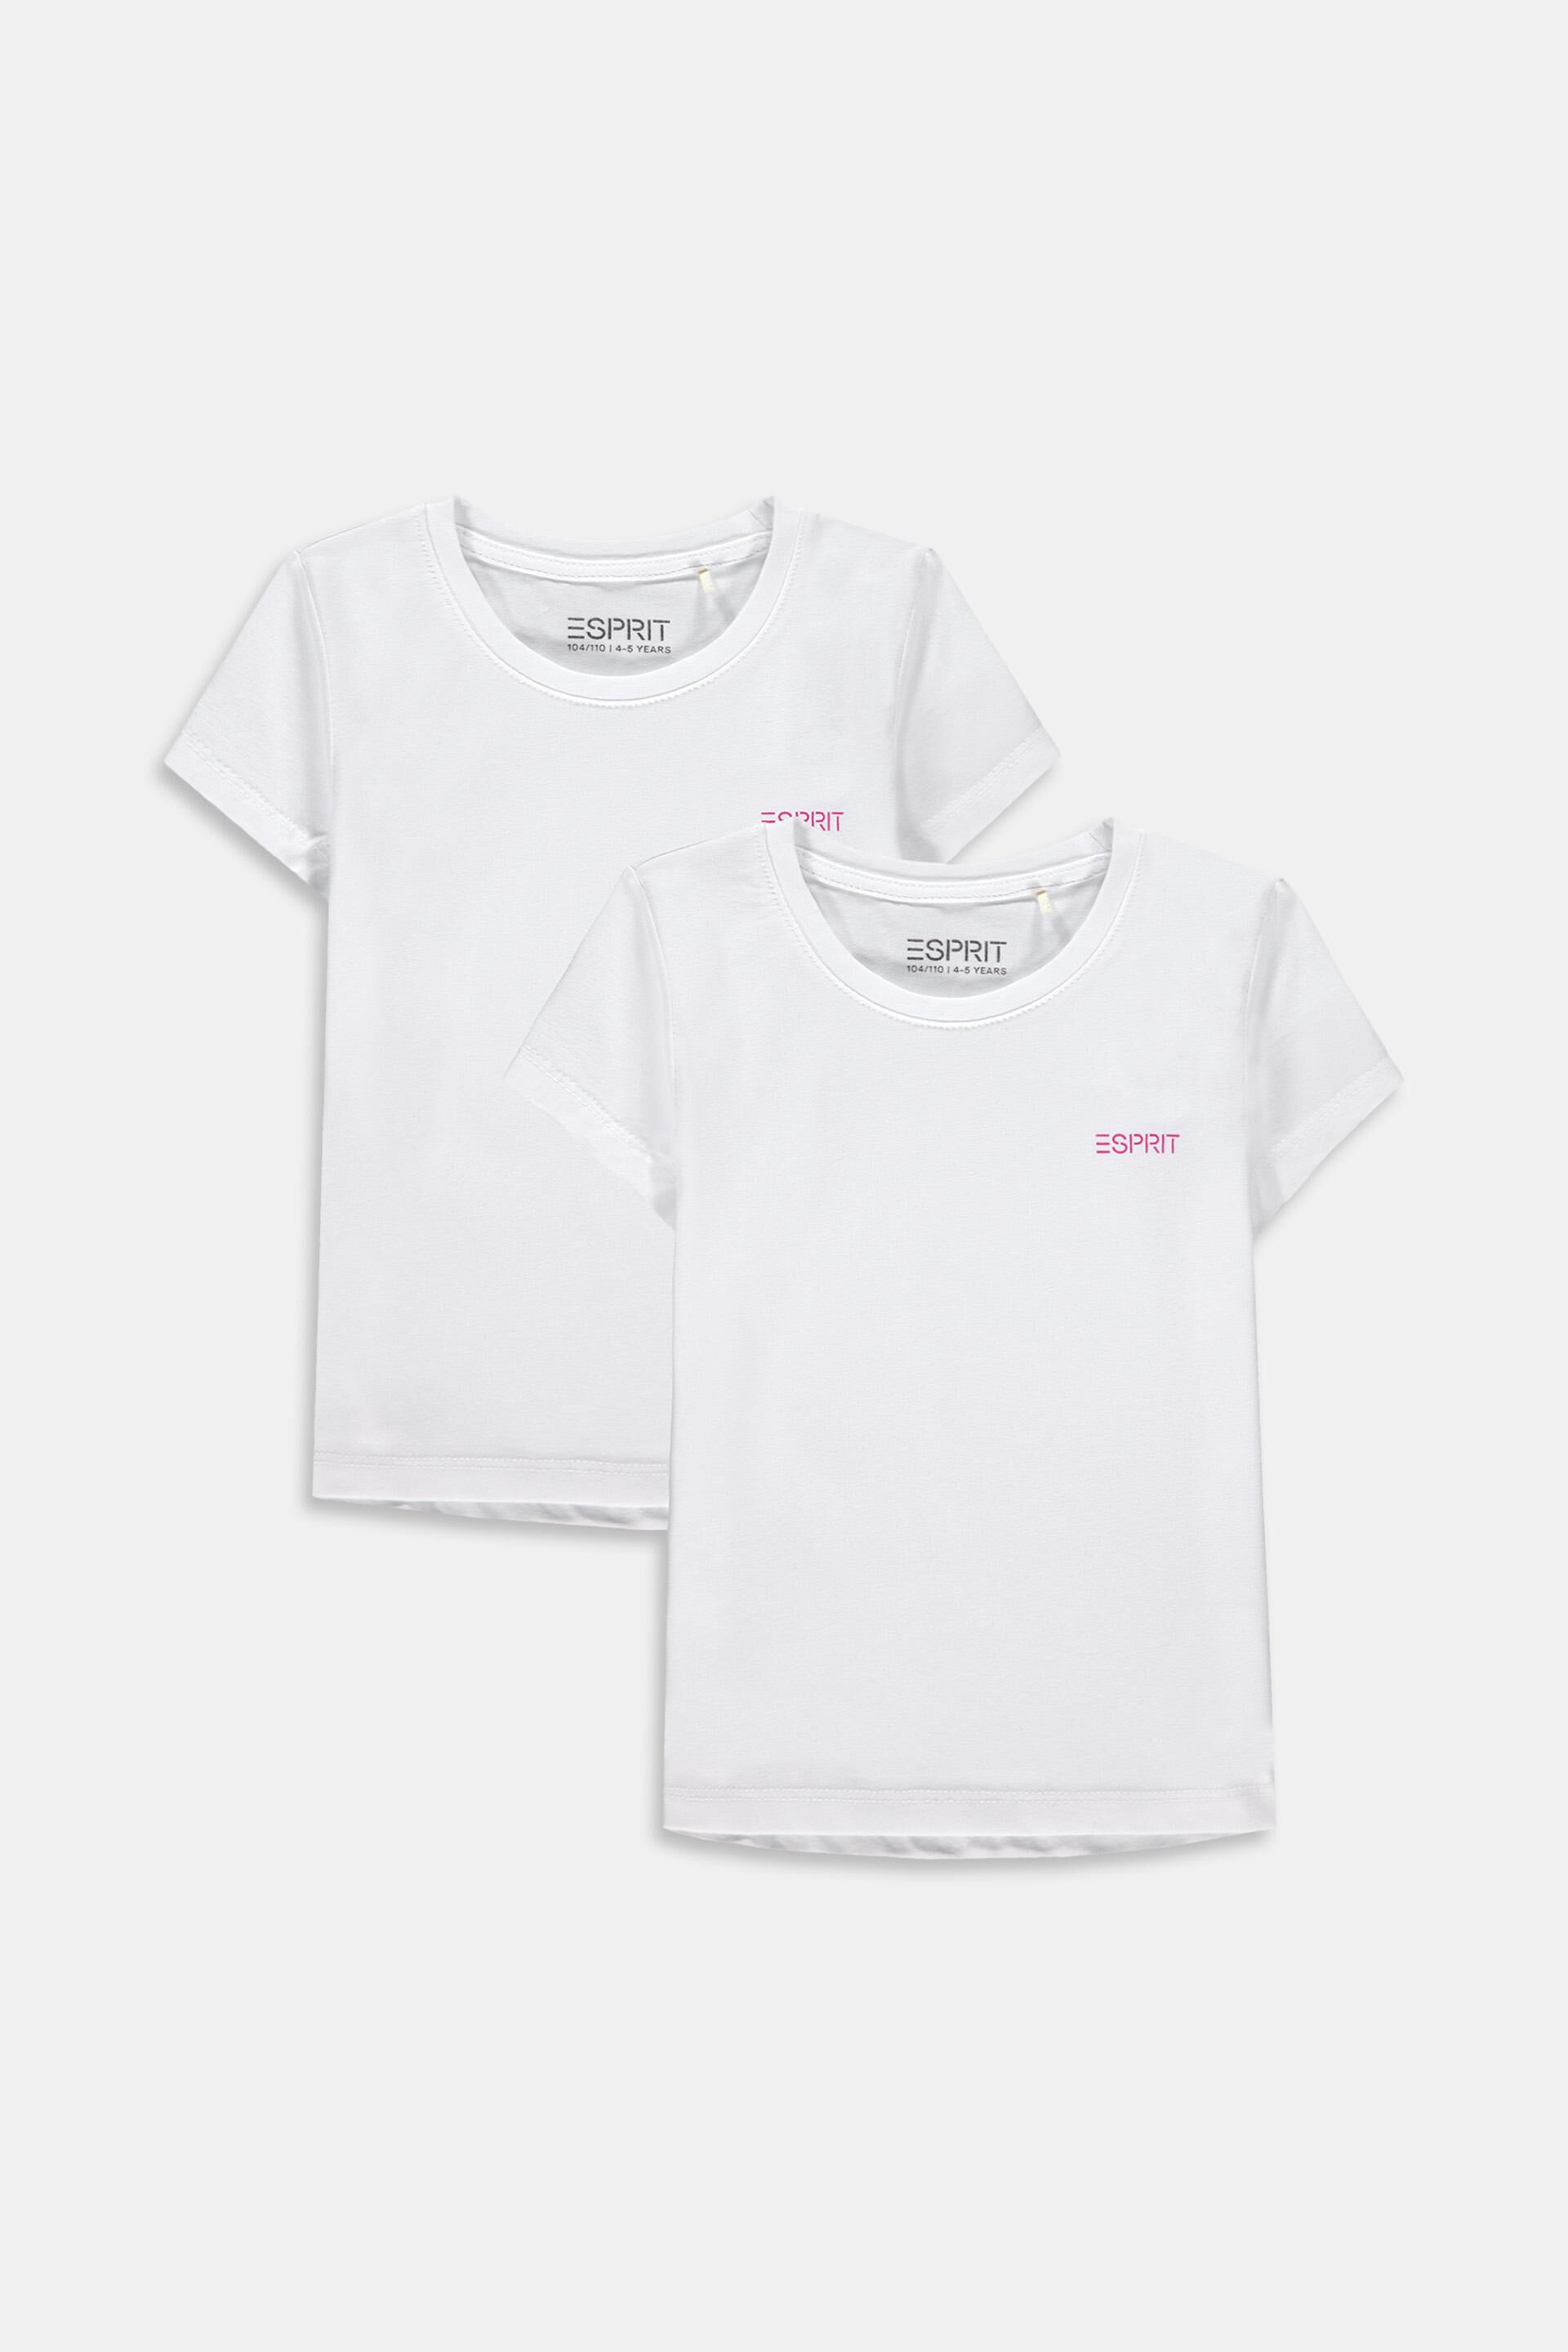 ESPRIT Mädchen T-Shirt Shirt mit Print in hellblau 404 RN1009301 